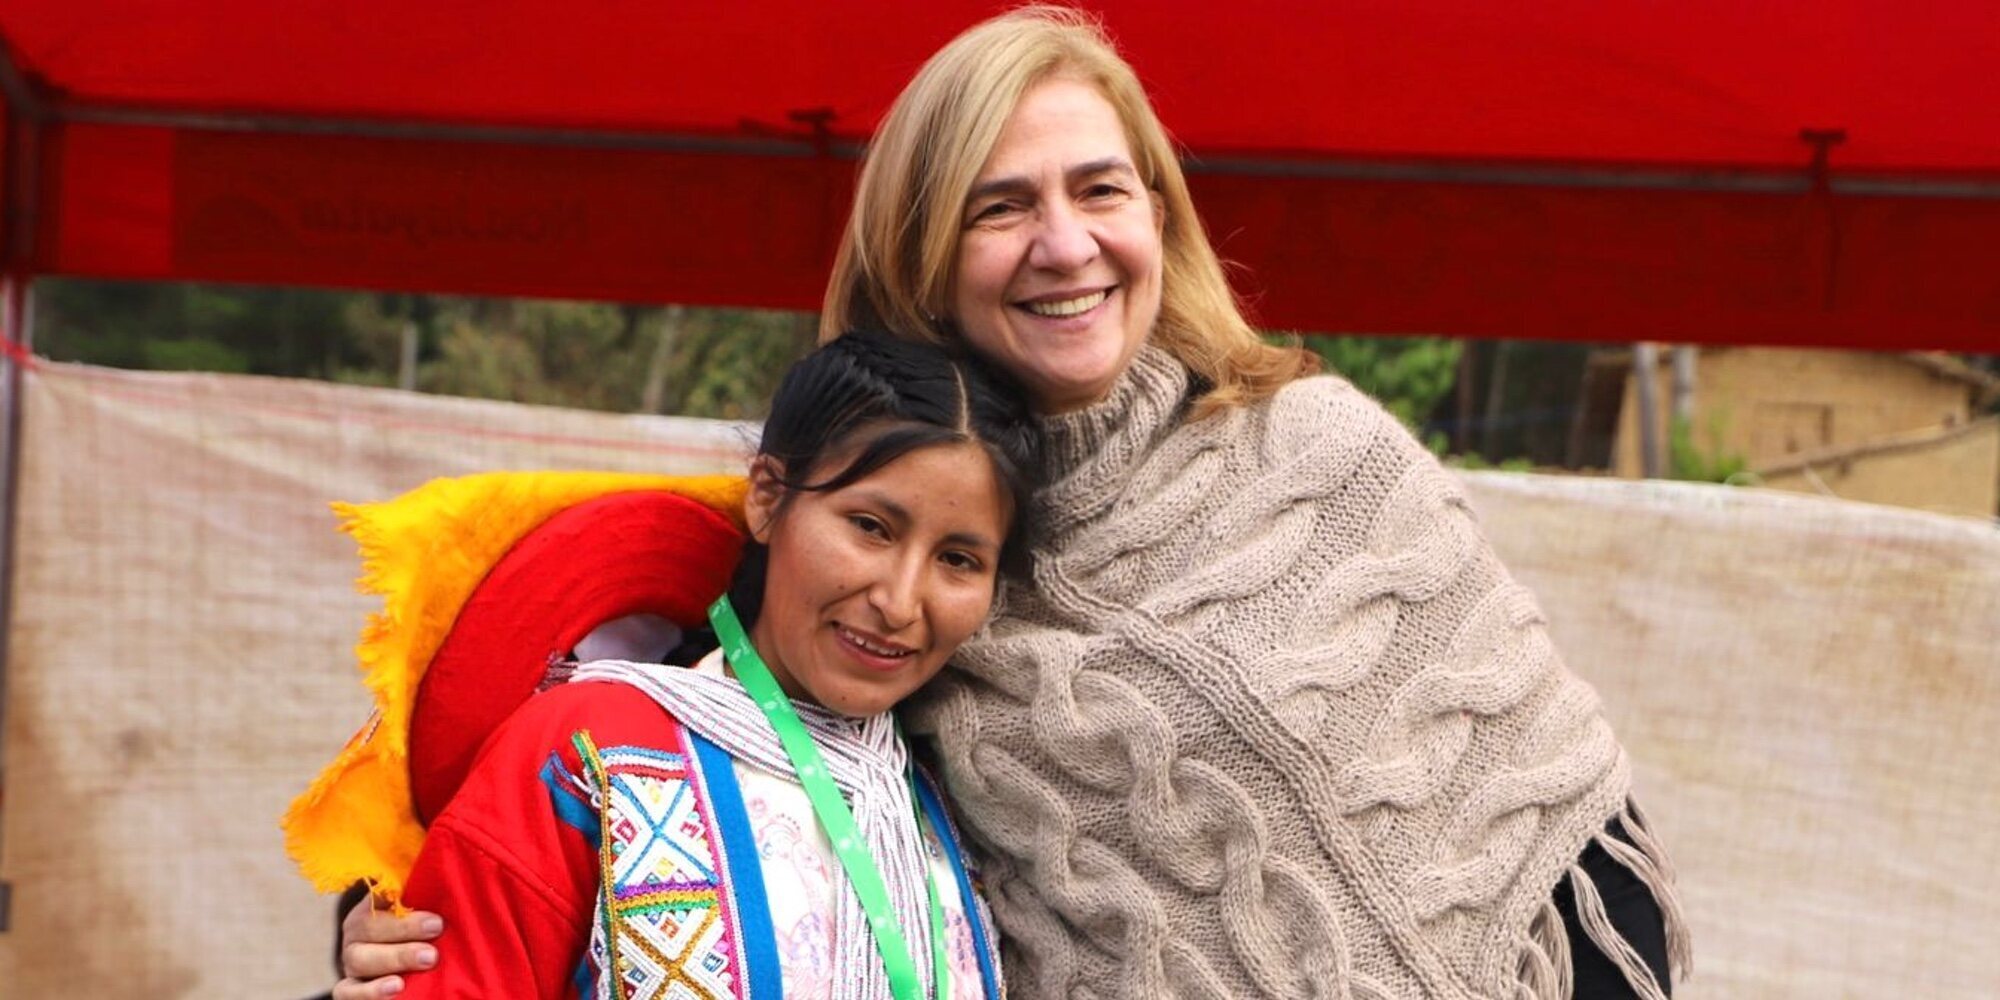 La Infanta Cristina reaparece muy sonriente en un viaje solidario a Perú